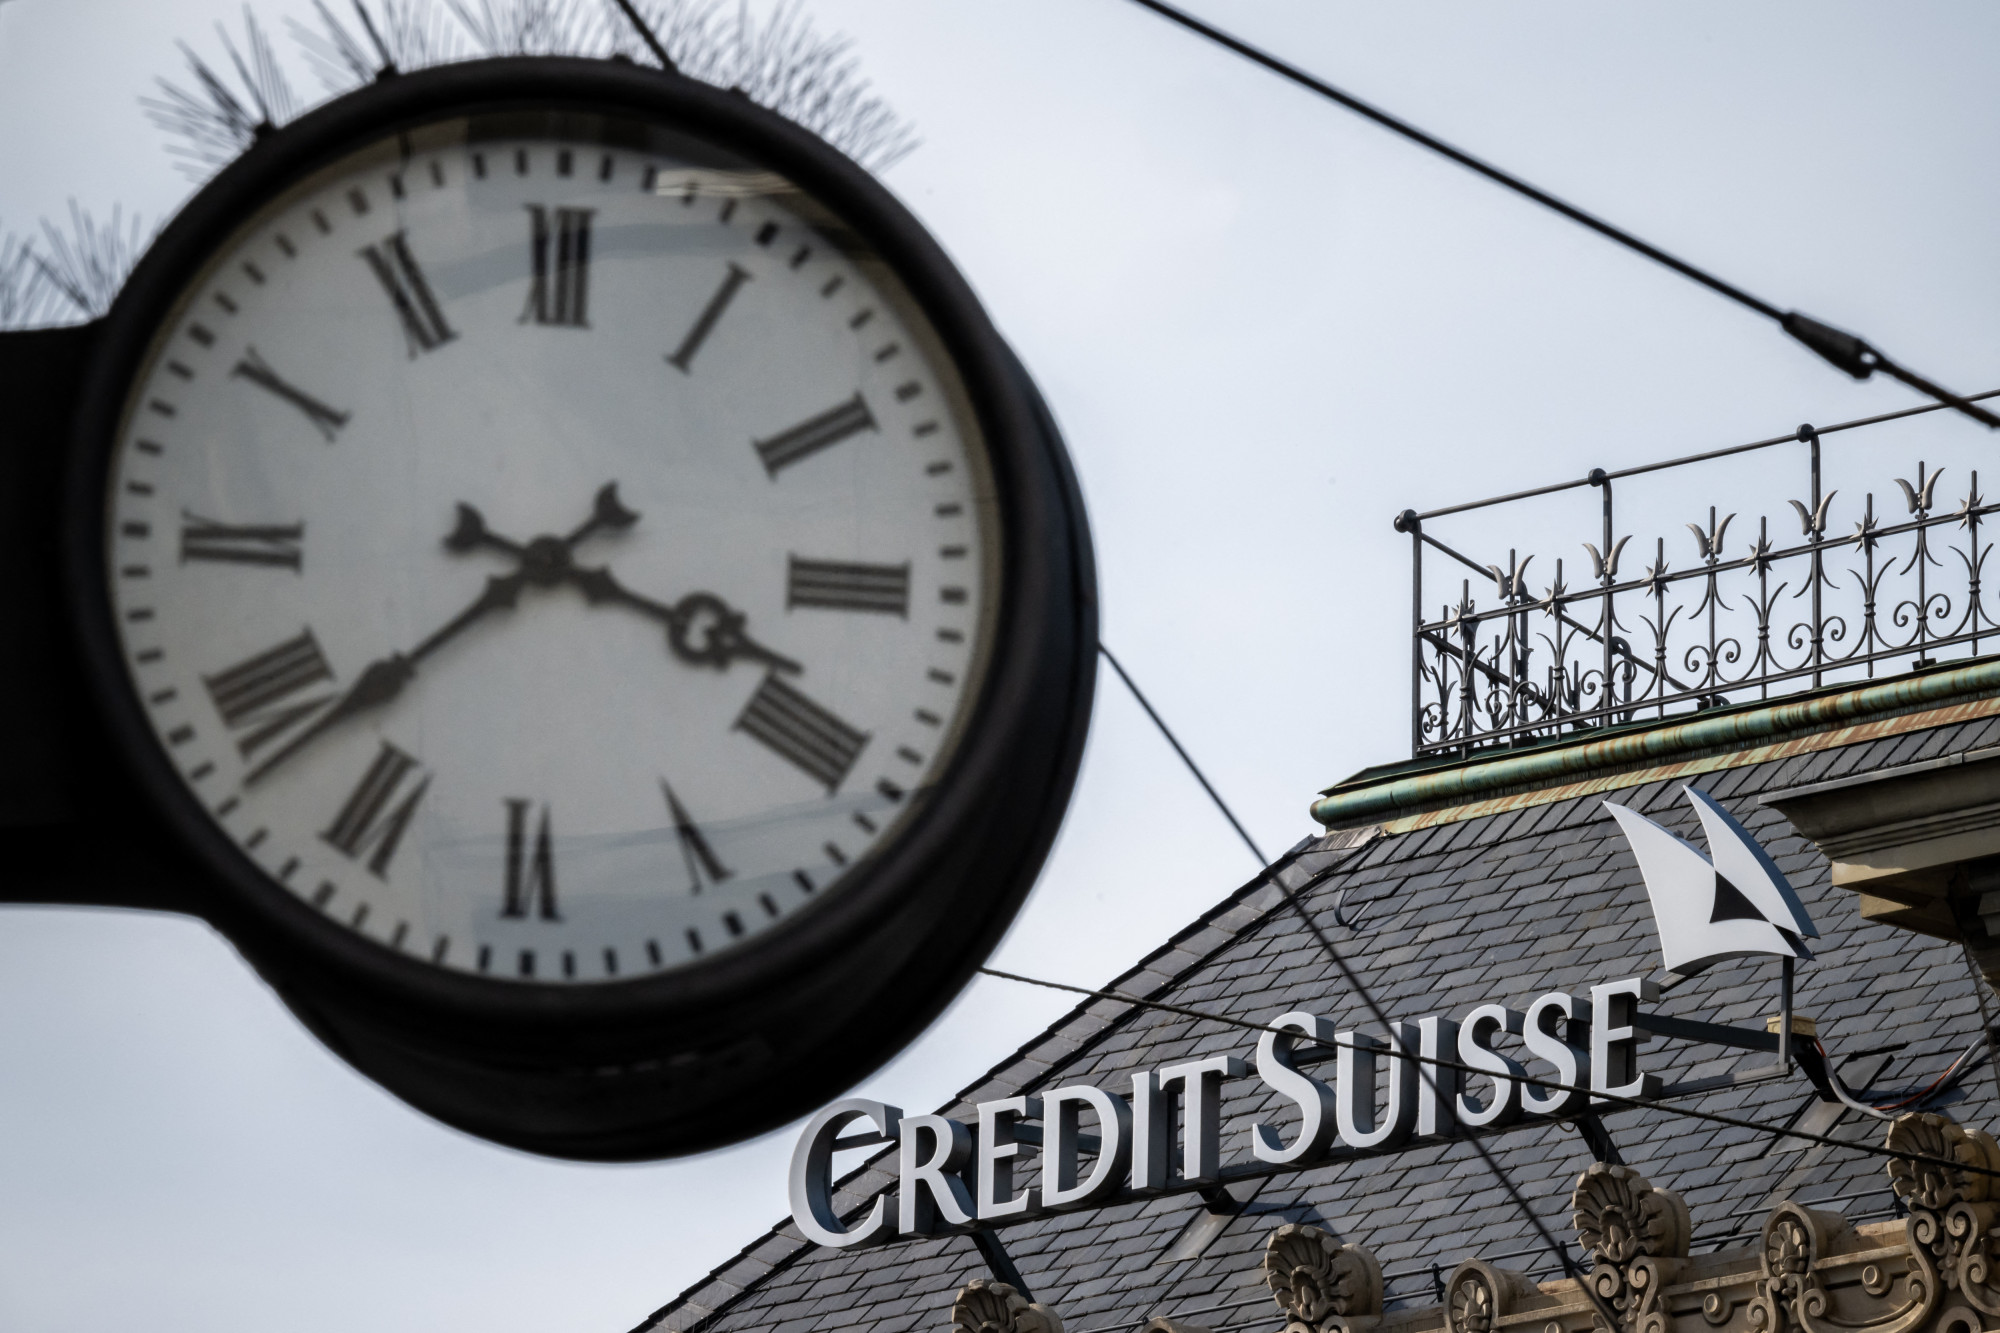 Gigabankot hoznának létre Svájcban, a UBS vásárolhatja fel a bajba került Credit Suisse-t